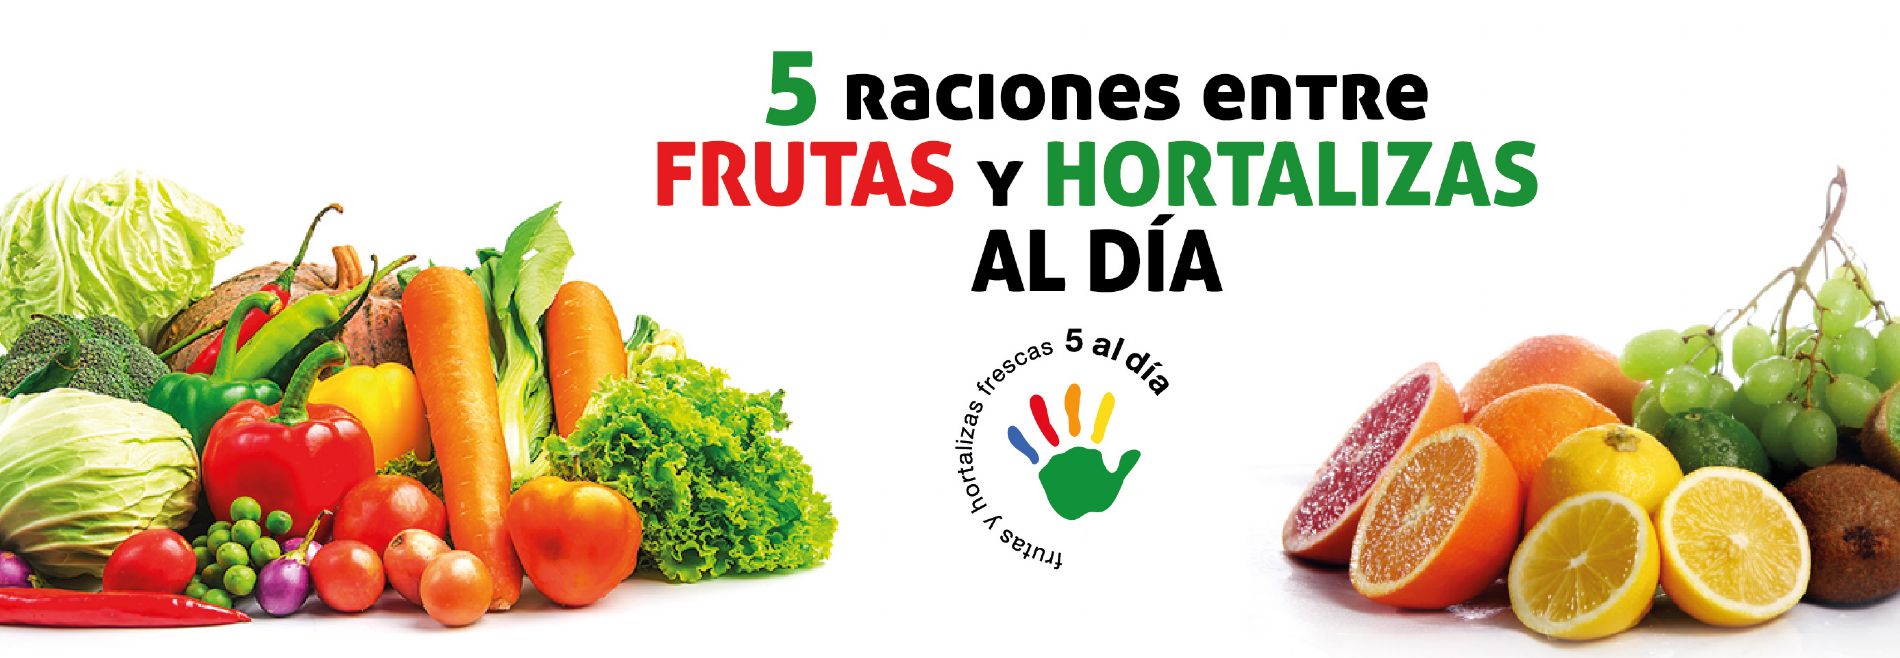 5 raciones de frutas y hortalizas al da